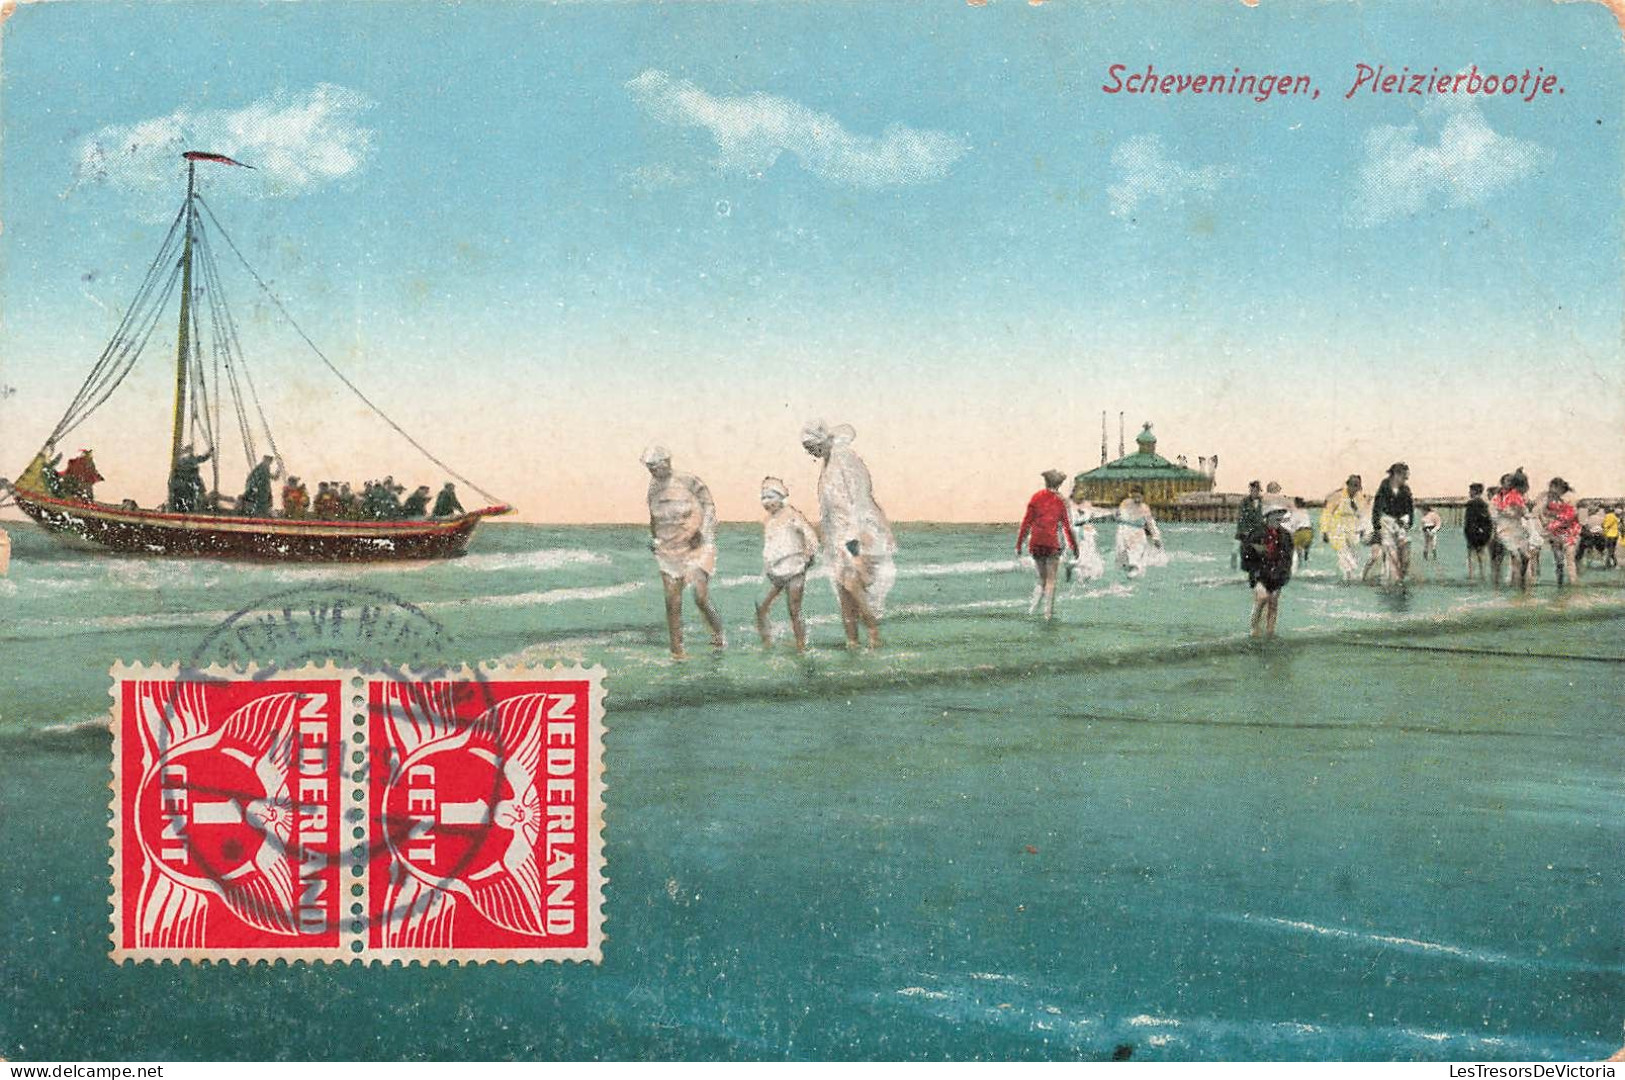 PAYS-BAS - Scheveningen - Pleizierbootje - Animé - Vue Sur La Plage - Bateau - Colorisé - Carte Postale Ancienne - Scheveningen